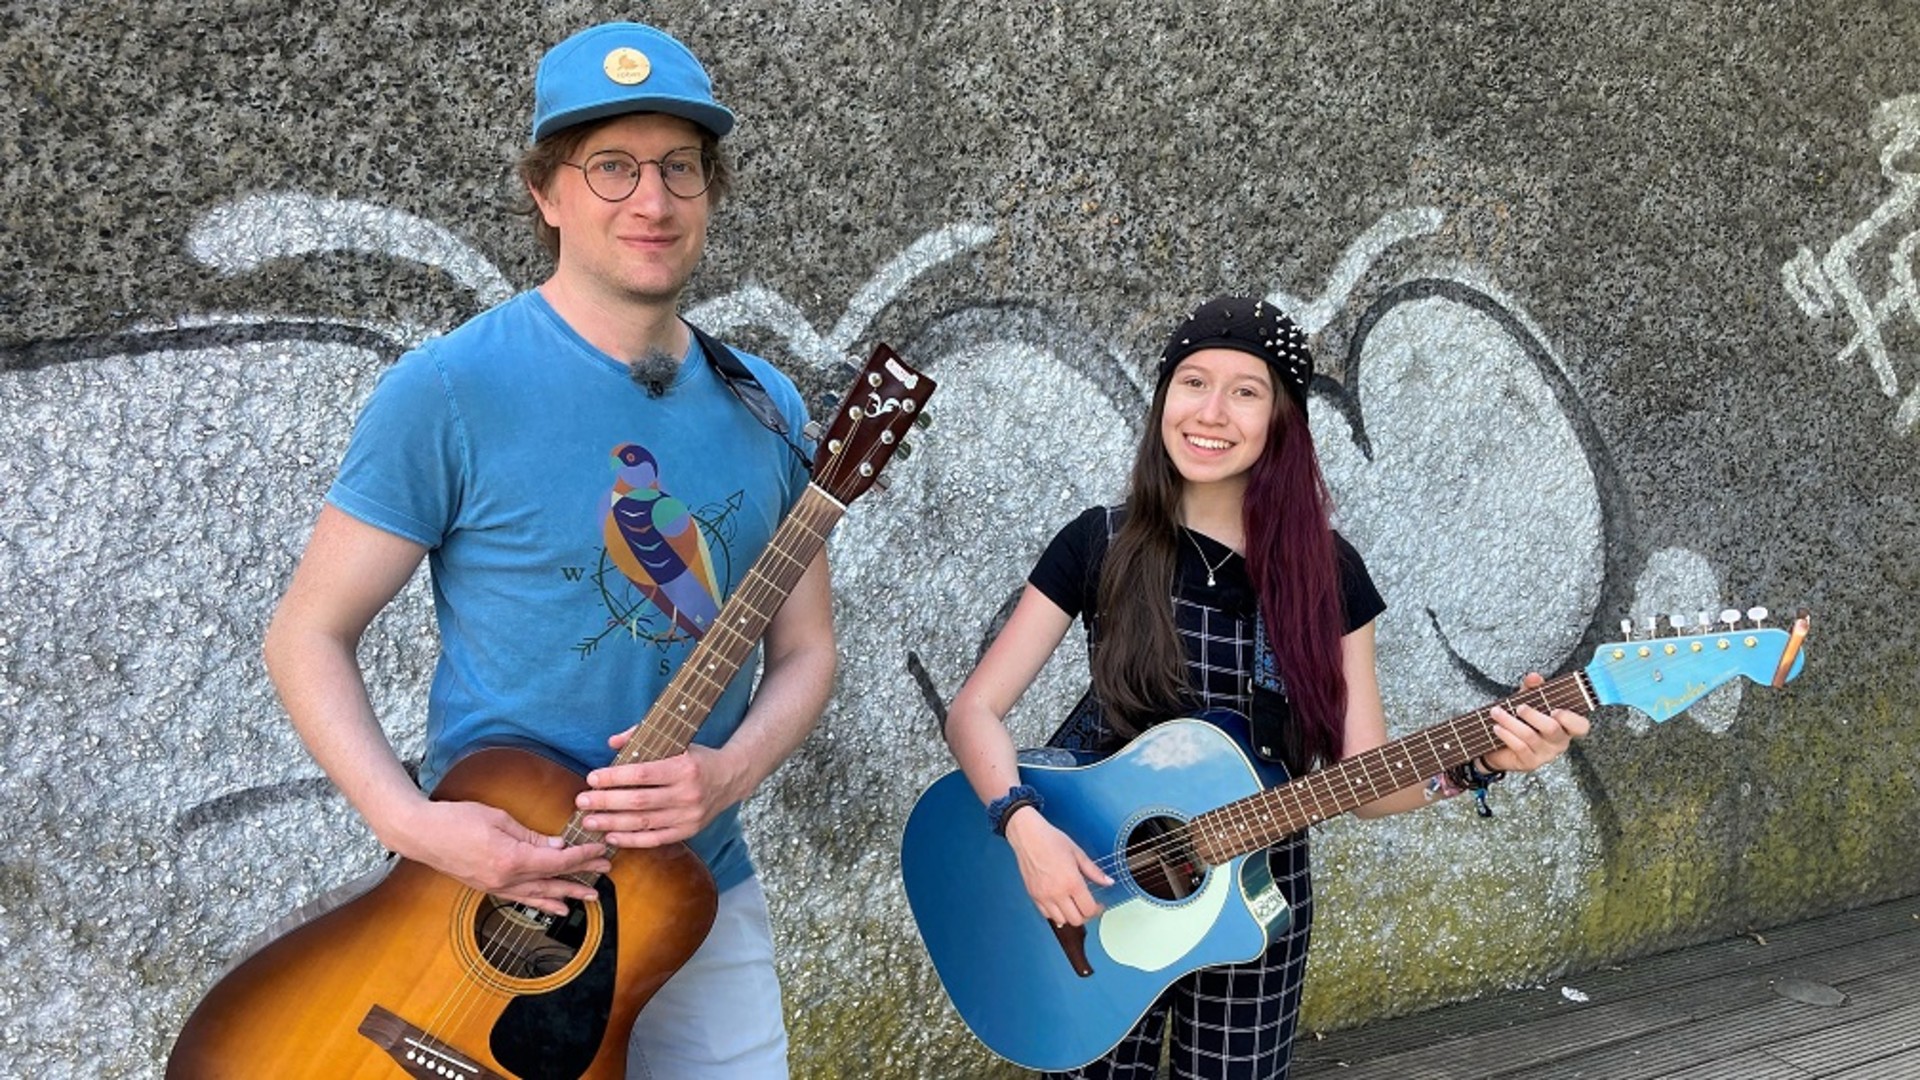 Robert und Sarah Hübers haben ihre Gitarren umgeschnallt, um gemeinsam Straßenmusik zu machen.